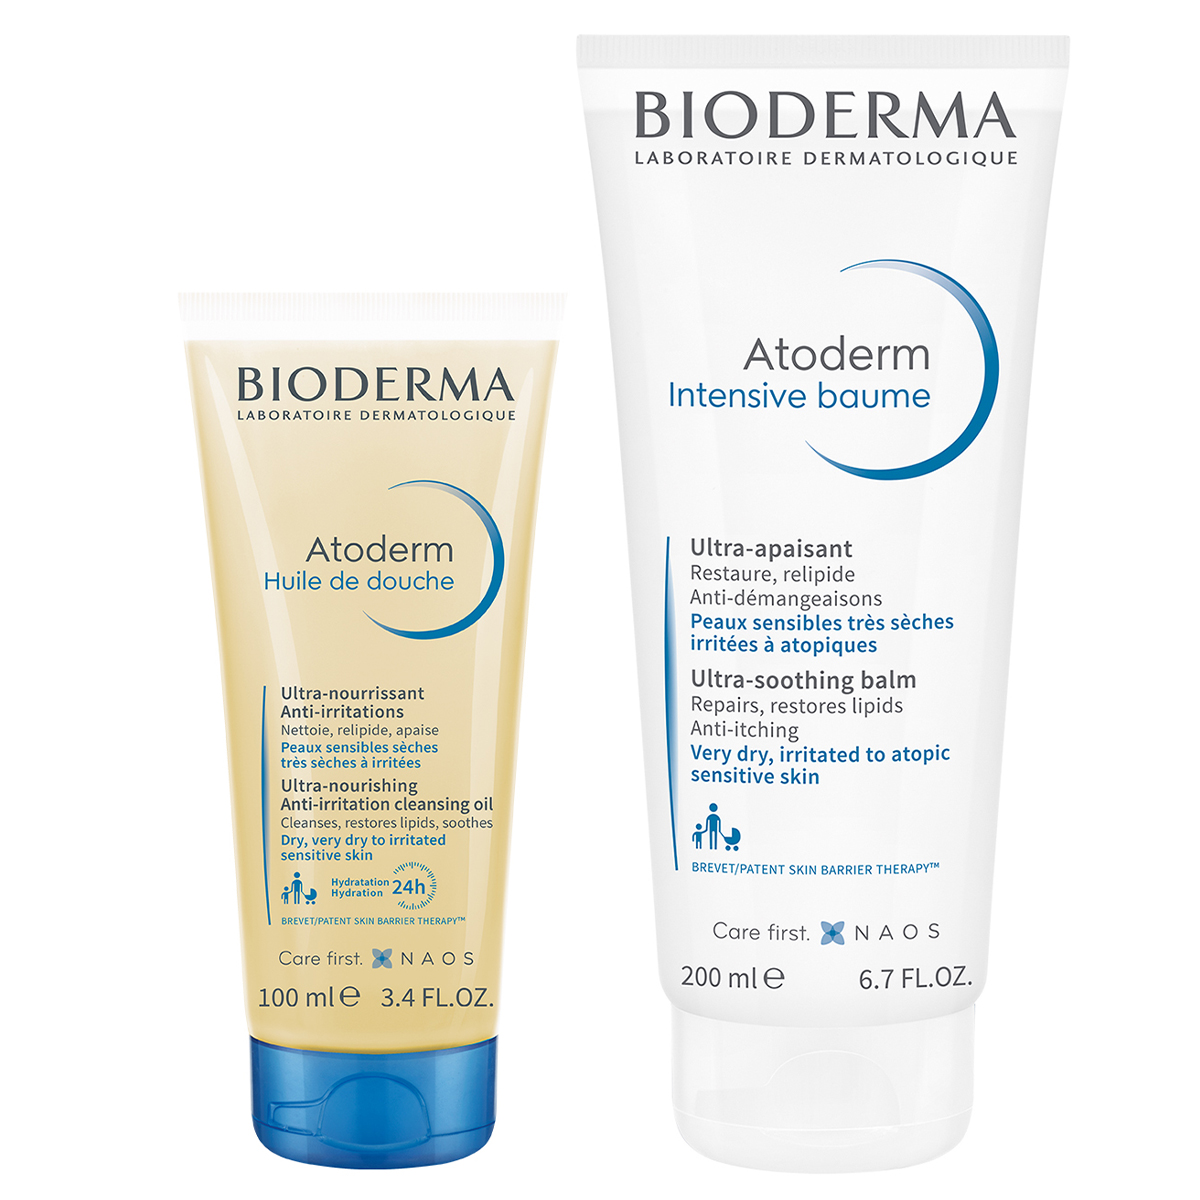 цена Bioderma Набор Защита и увлажнение сухой, чувствительной и атопичной кожи (Bioderma, Atoderm)